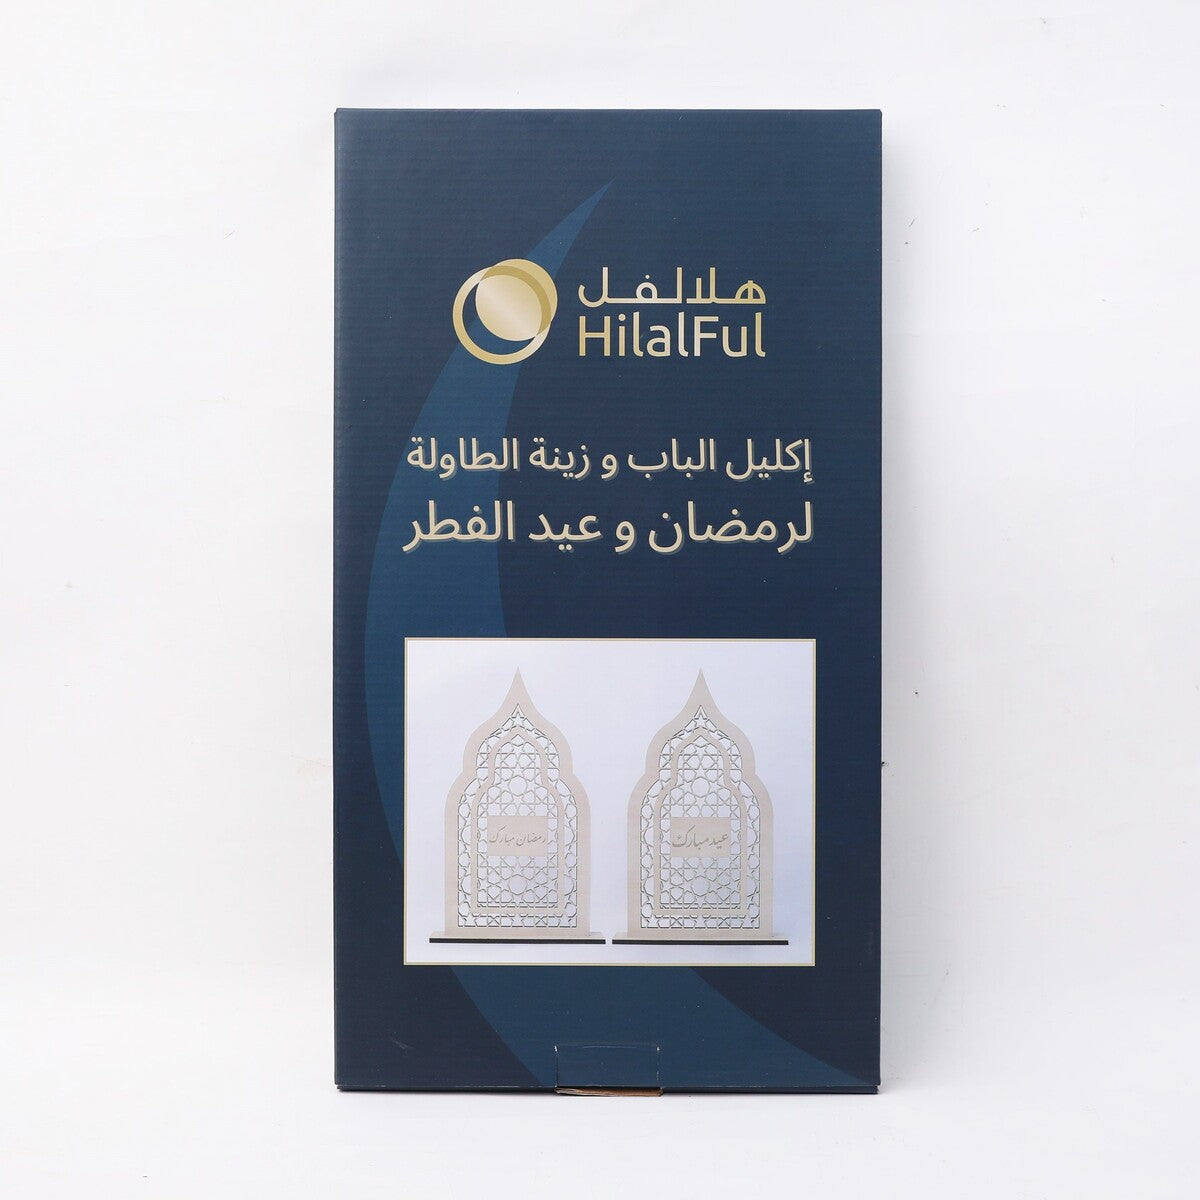 Ramadan & Eid Al-Fitr Wooden Door Wreath & Table Display - Arabic